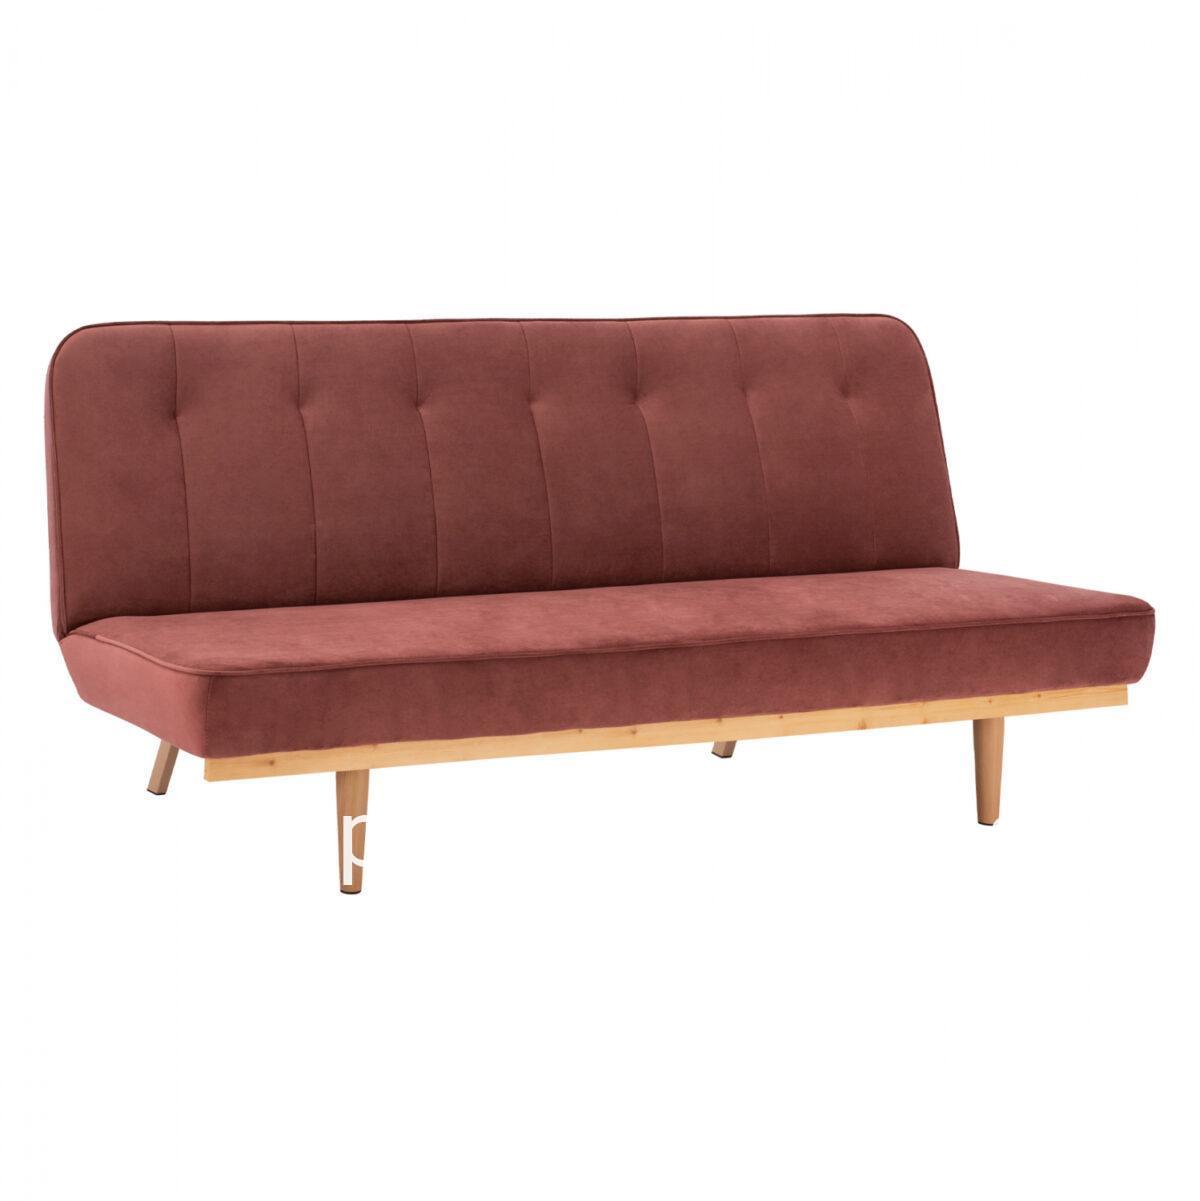 Sofa Bed 3seater from velvet rotten apple HM3168.02 193x85x88cm